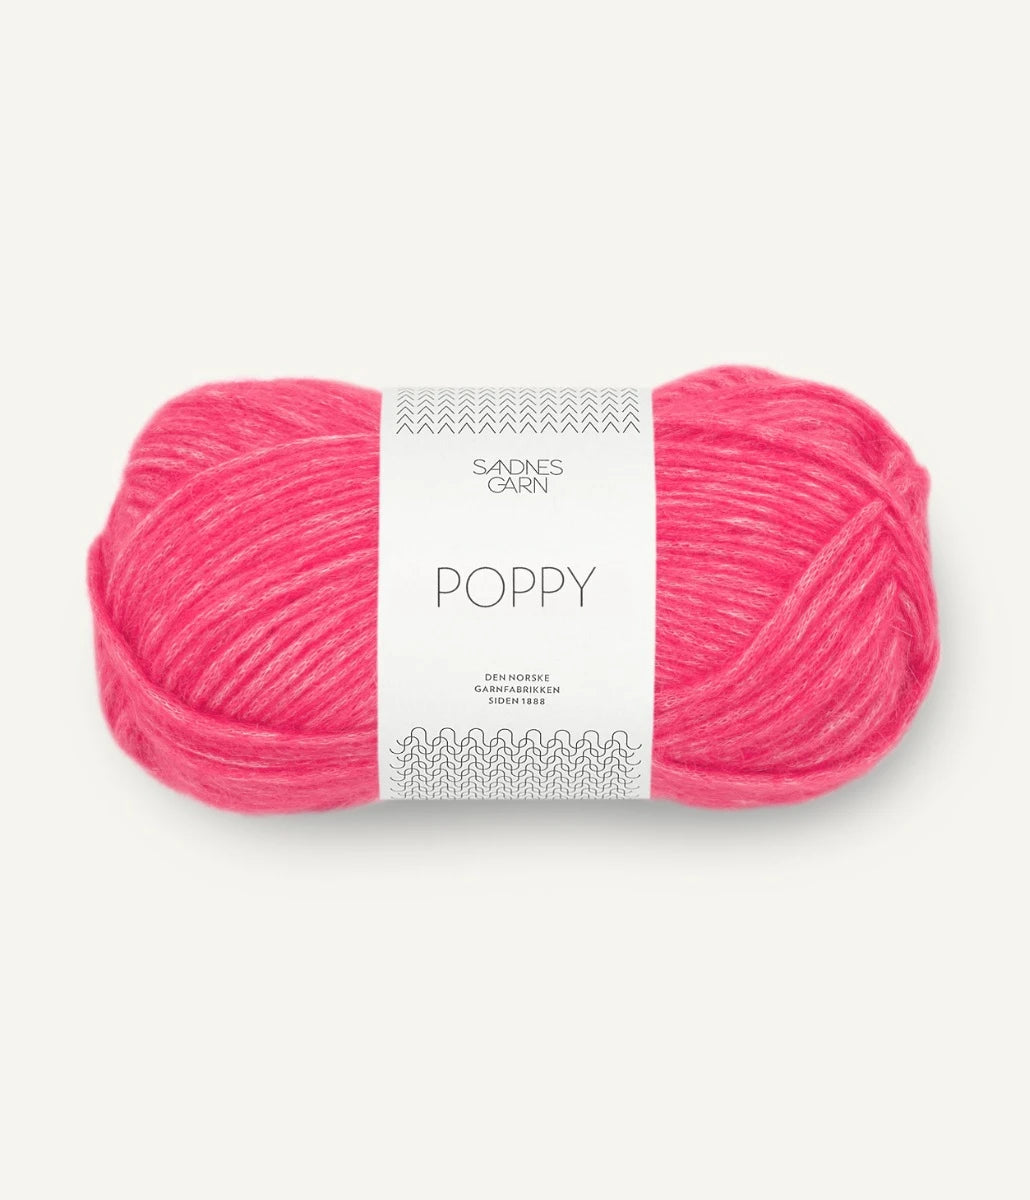 Kuvassa on Sandnes Garn Poppy -lanka (yarn) värissä Bubblegum Pink.